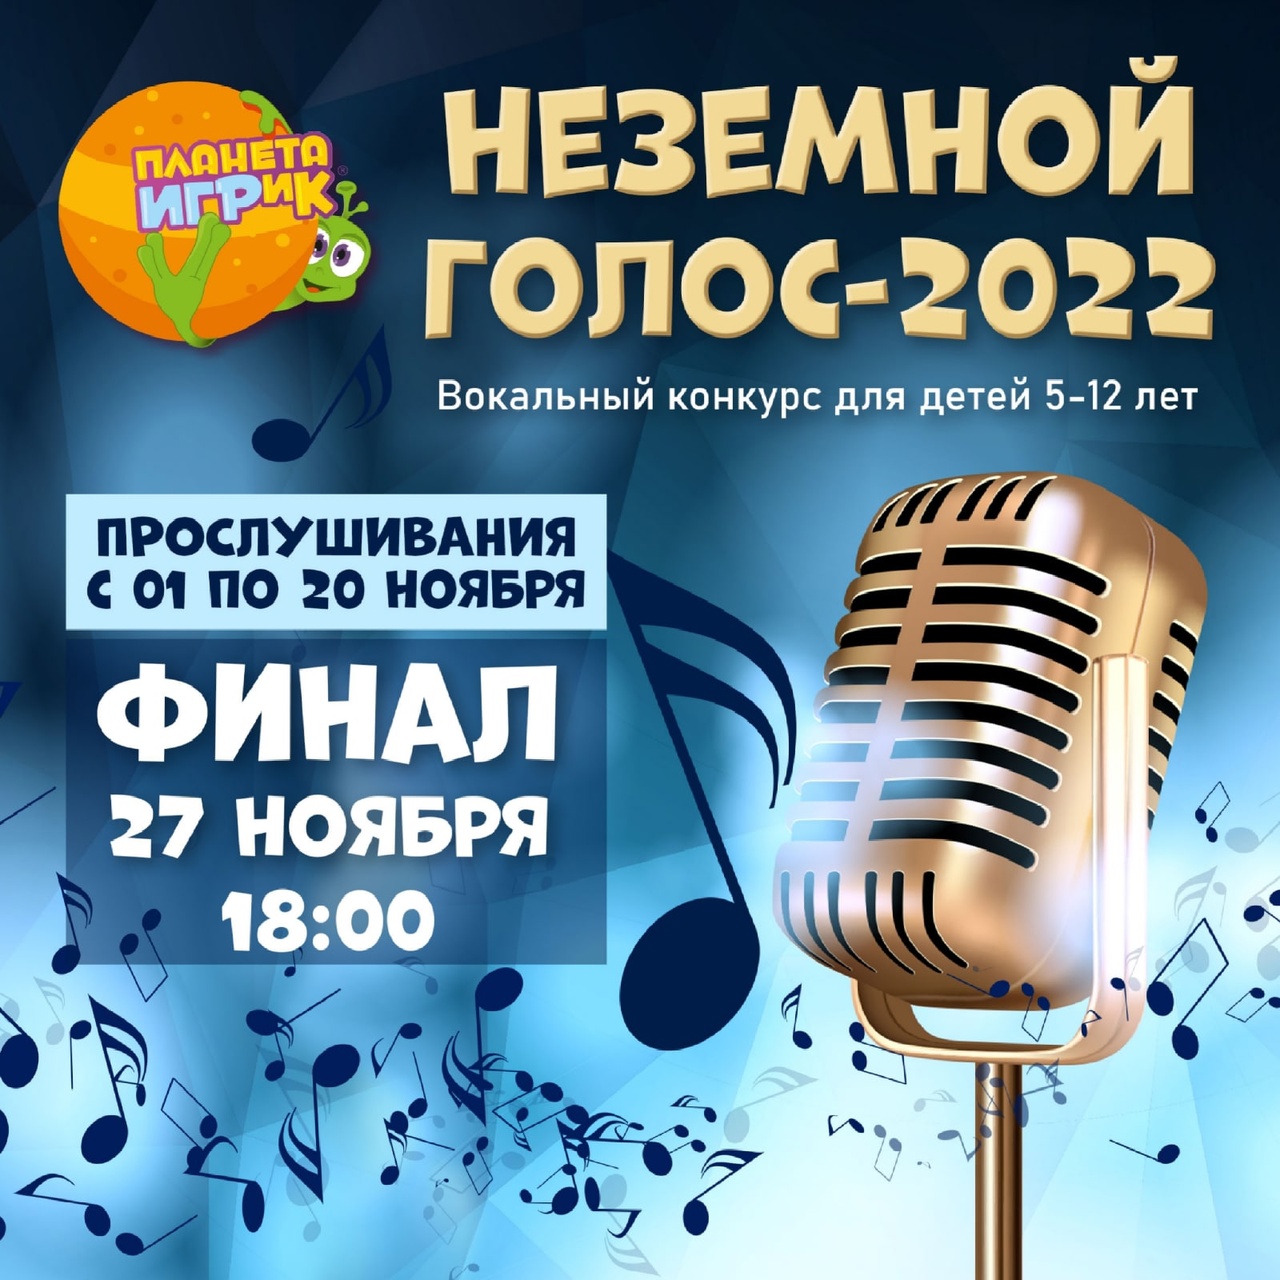 Вокальный конкурс «Неземной голос – 2022»